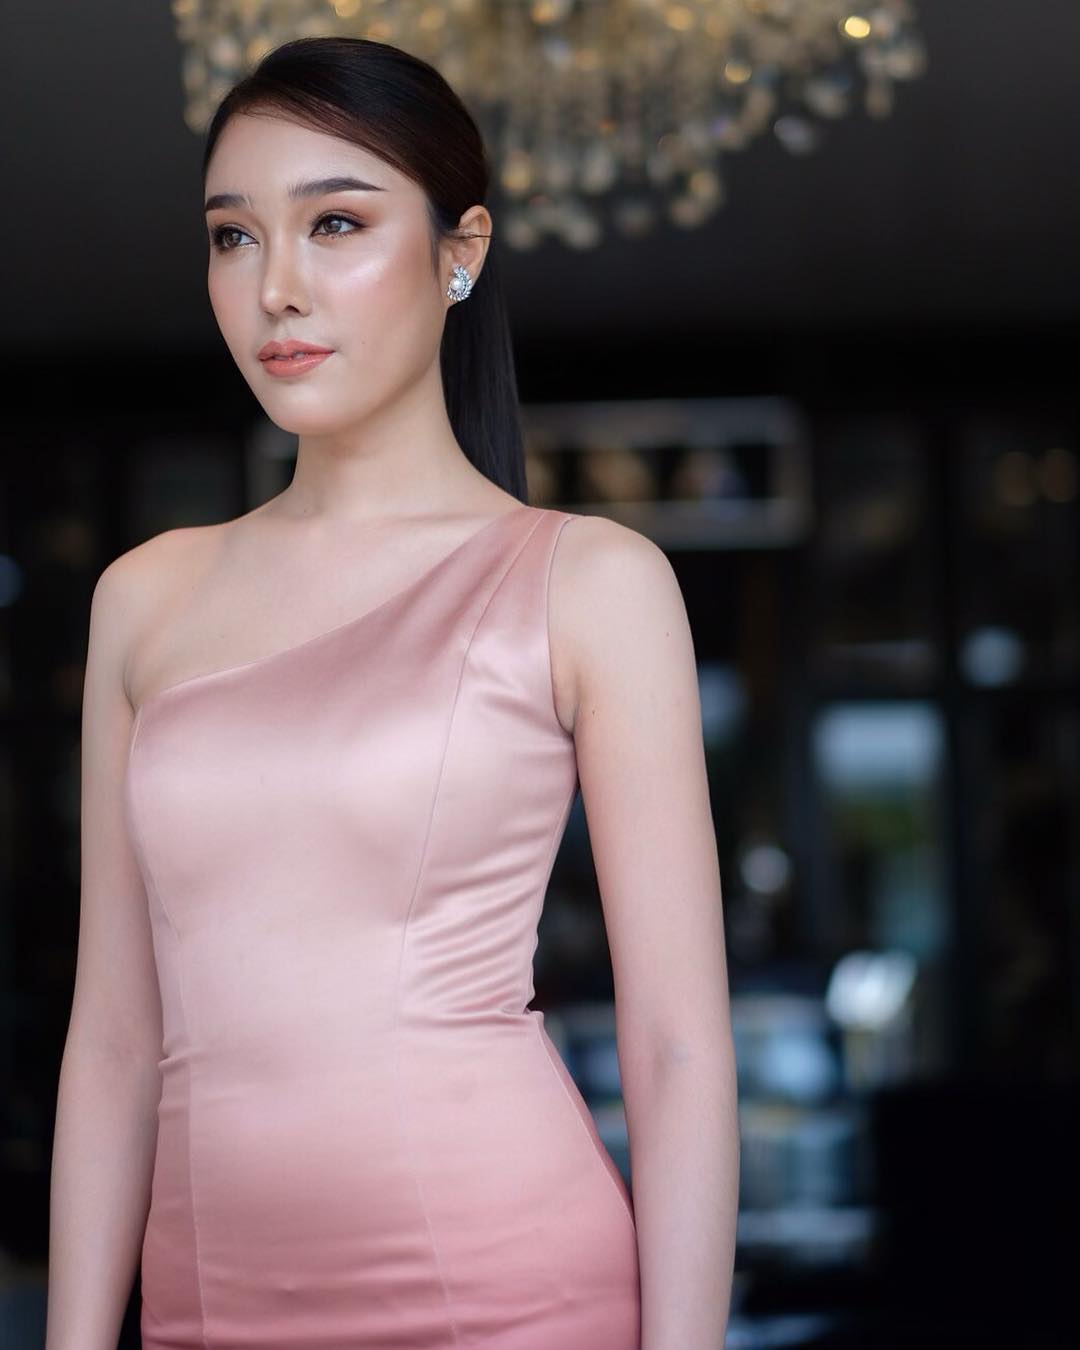 Por Chayapa – Most Beautiful Ladyboy in Thailand Instagram